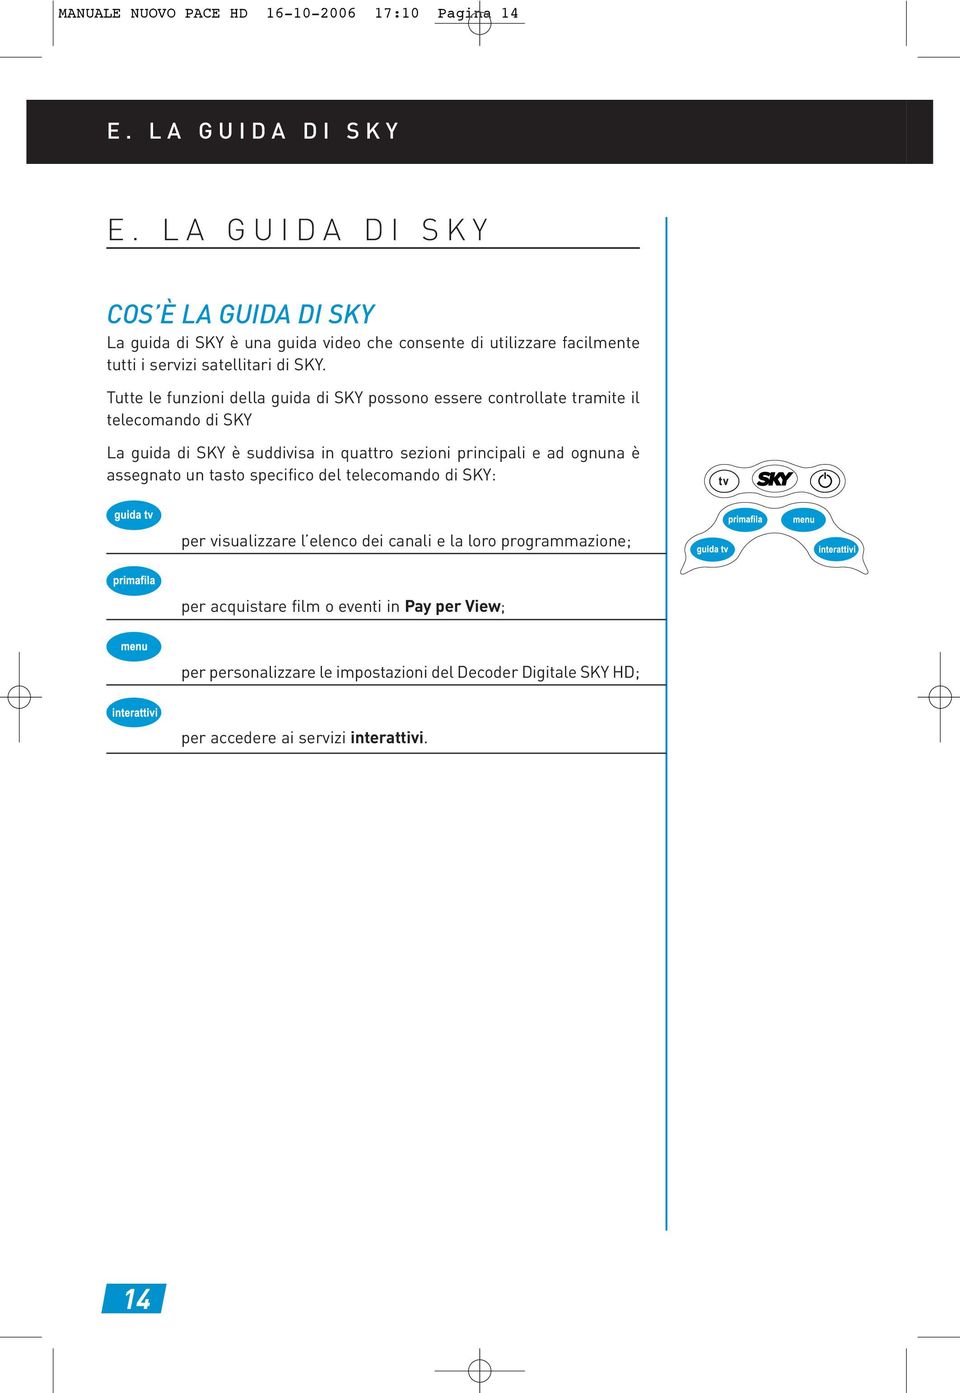 Tutte le funzioni della guida di SKY possono essere controllate tramite il telecomando di SKY La guida di SKY è suddivisa in quattro sezioni principali e ad